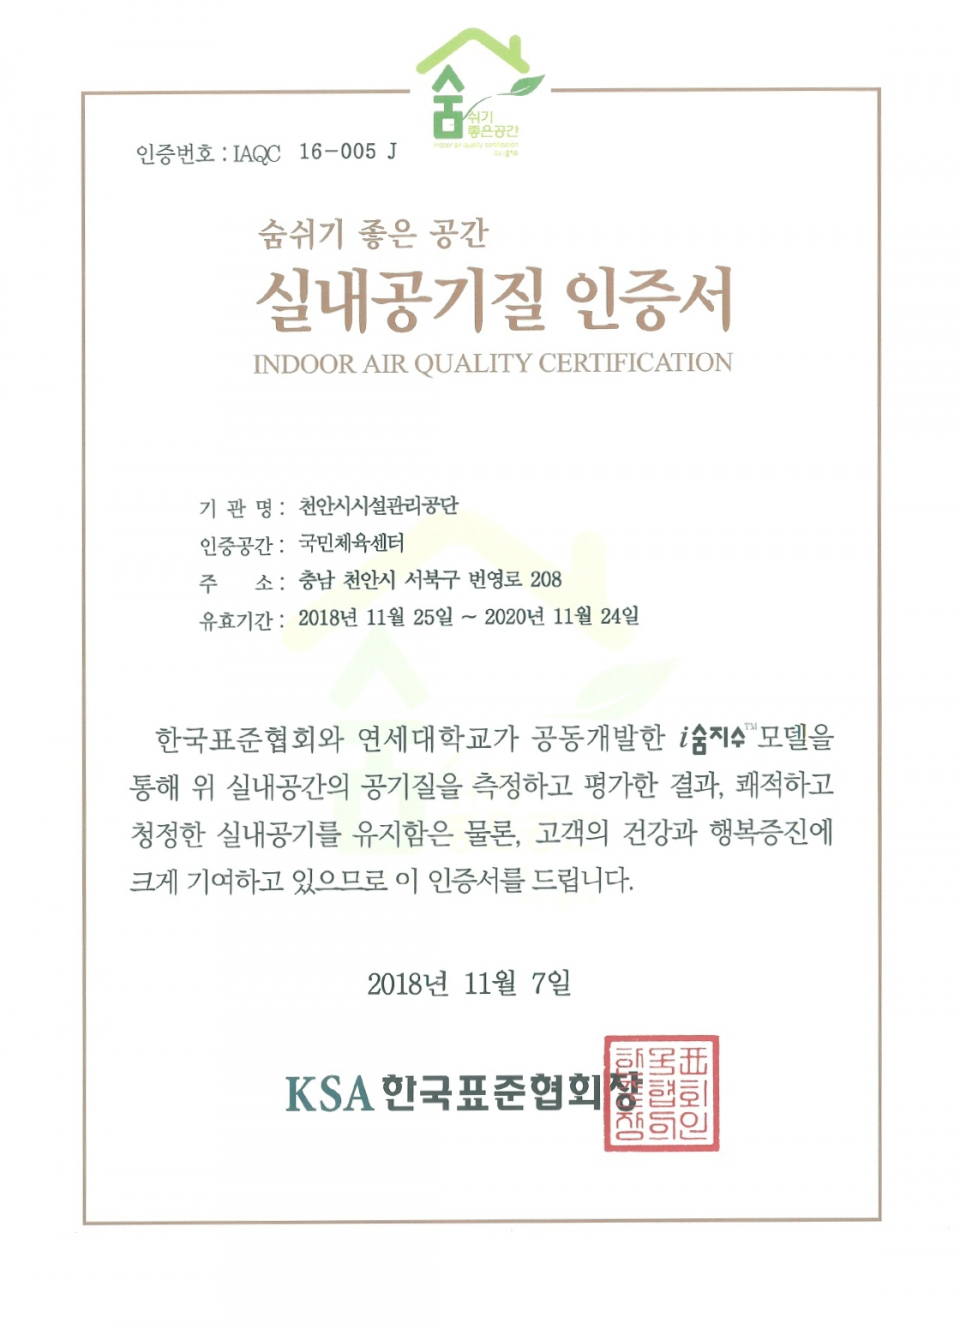 천안 국민체육센터가 한국표준협회(KSA)로부터 받은 숨쉬기 좋은 공간 실내공기질 인증서